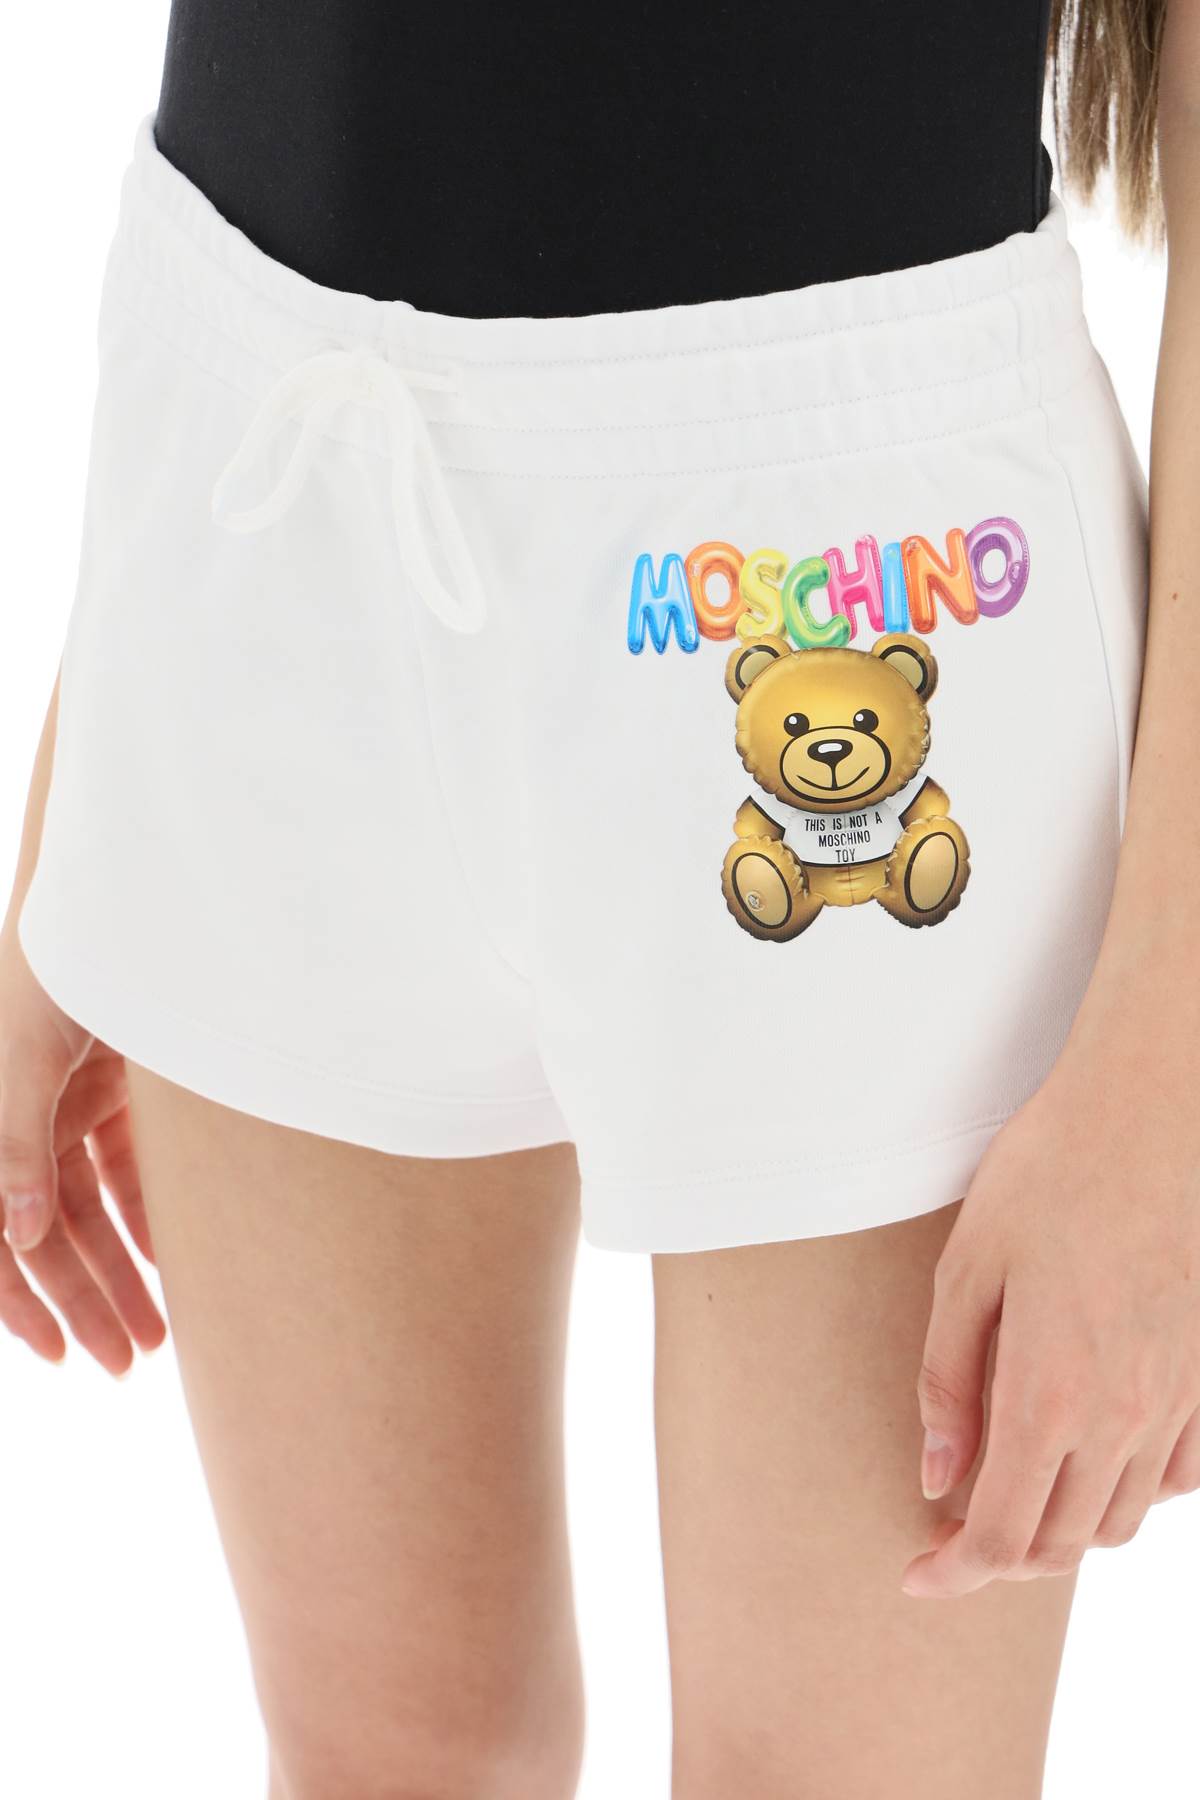 Moschino Moschino logo printed shorts